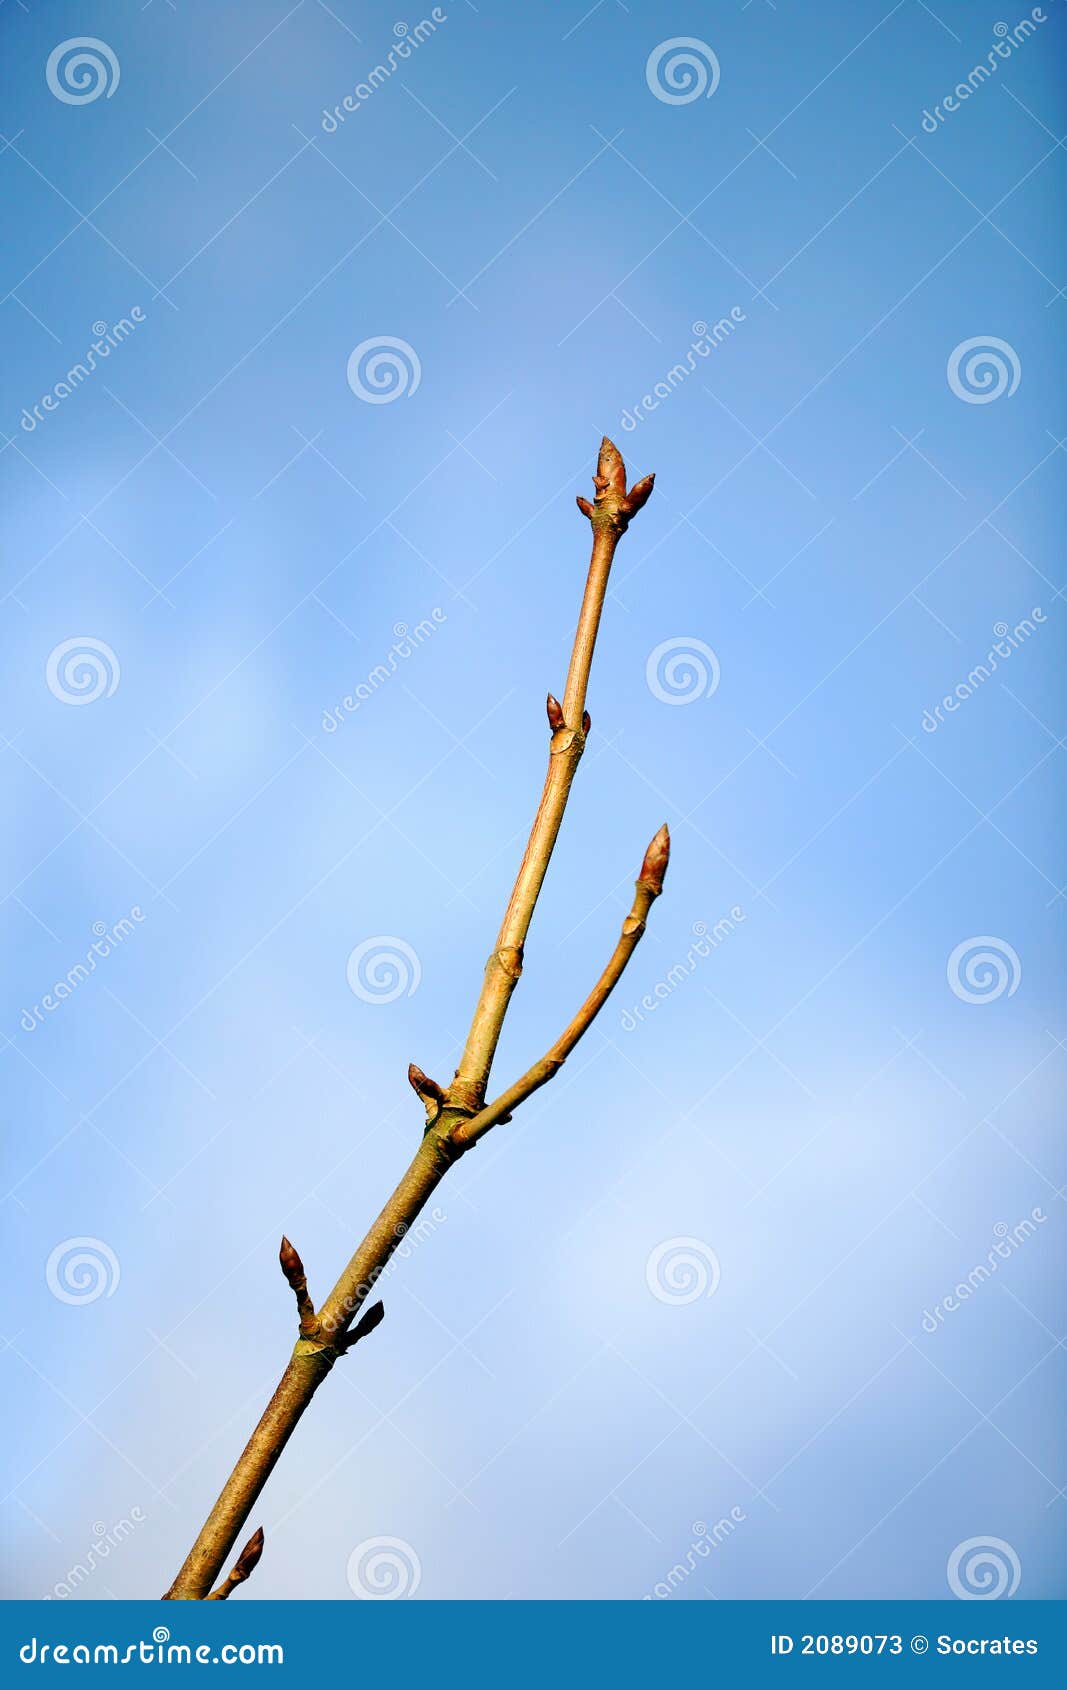 budding branch of tree